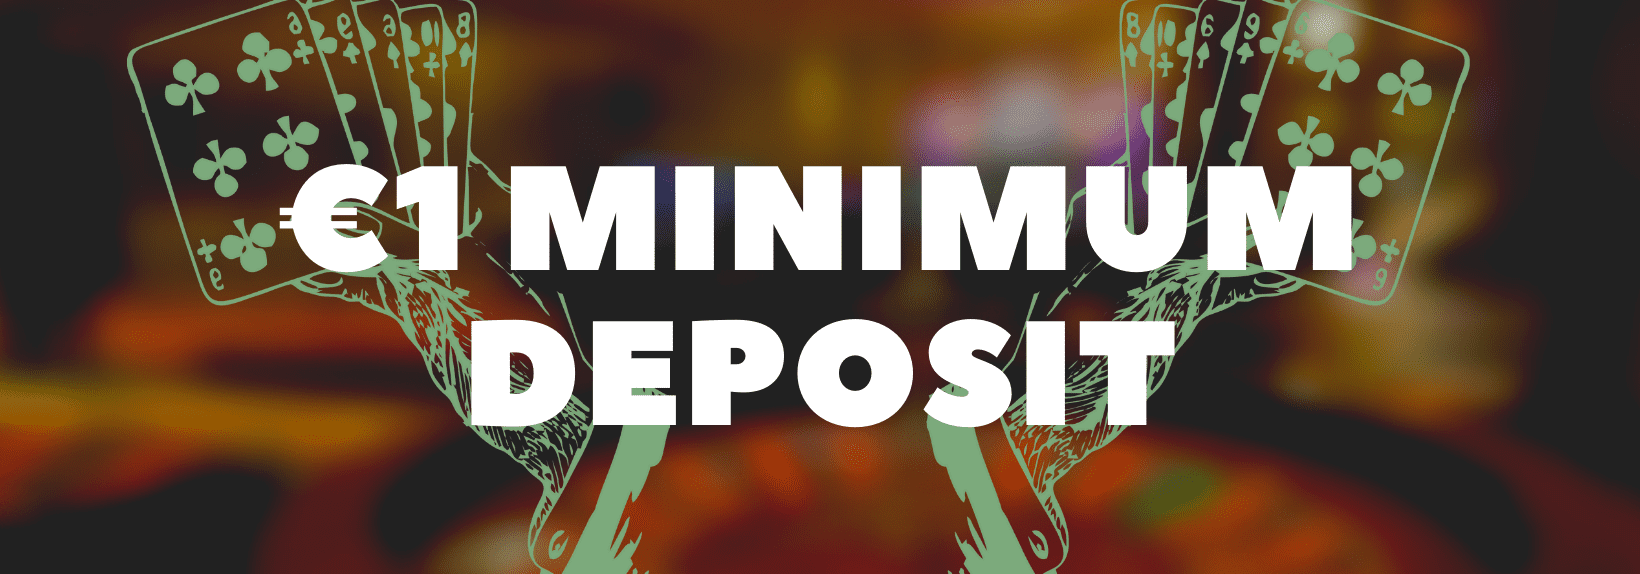 1 Euro Minimum Deposit